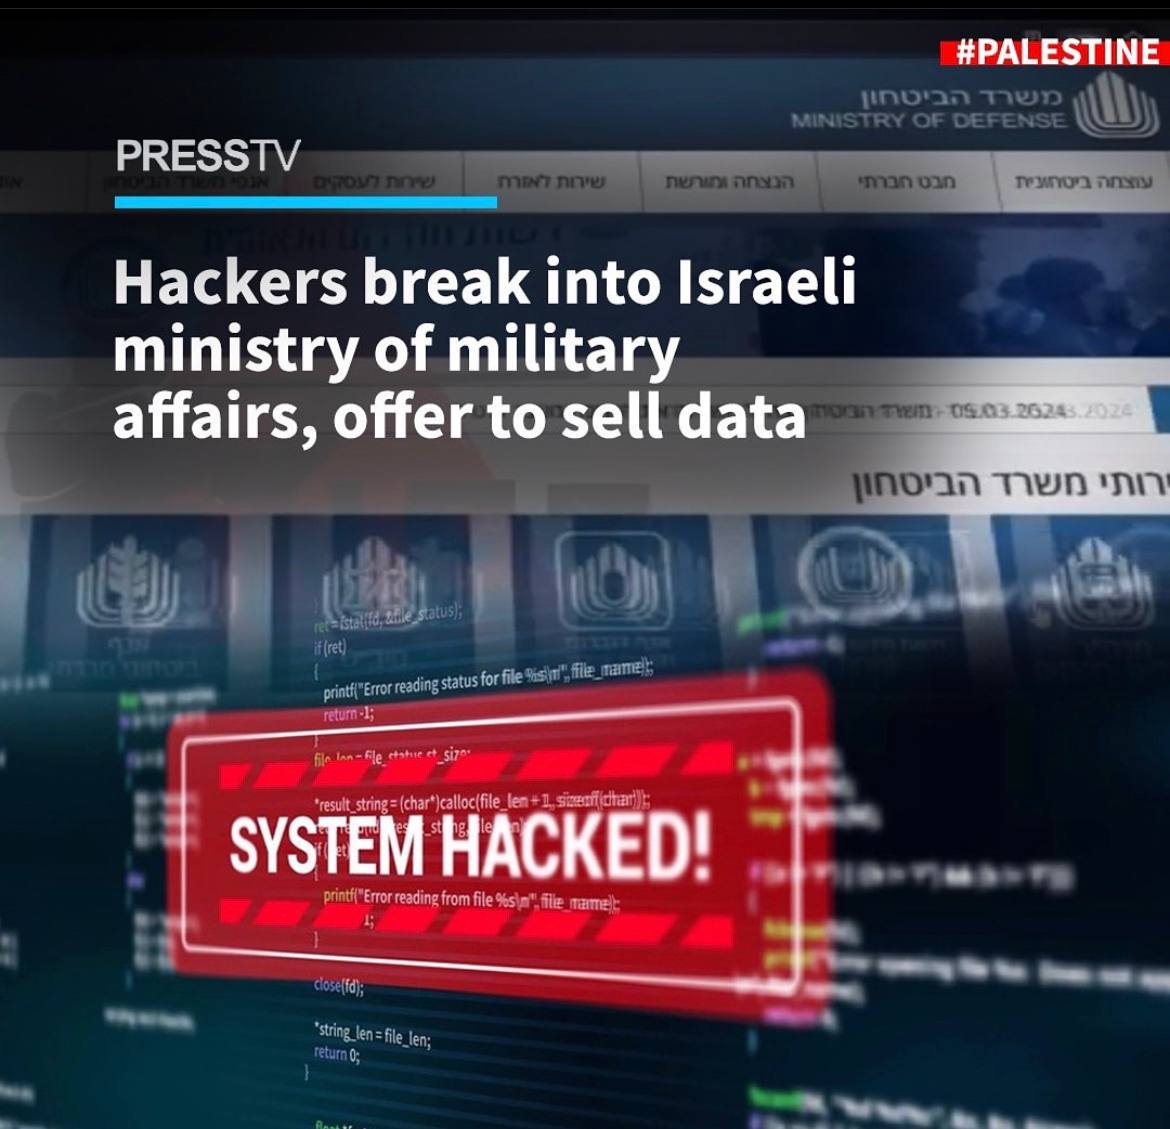 Bir grup hacker “NetHunter” İsrail Askeri İşler Bakanlığı'na girerek veri elde etmeyi başardı. İsrailli Hayom, Siyonist güvenlik kaynaklarının ihlali doğruladığını aktardı.

İsrail rejimi yüzlerce Filistinli mahkumu serbest bırakmadığı takdirde verileri satmakla tehdit ettiler.